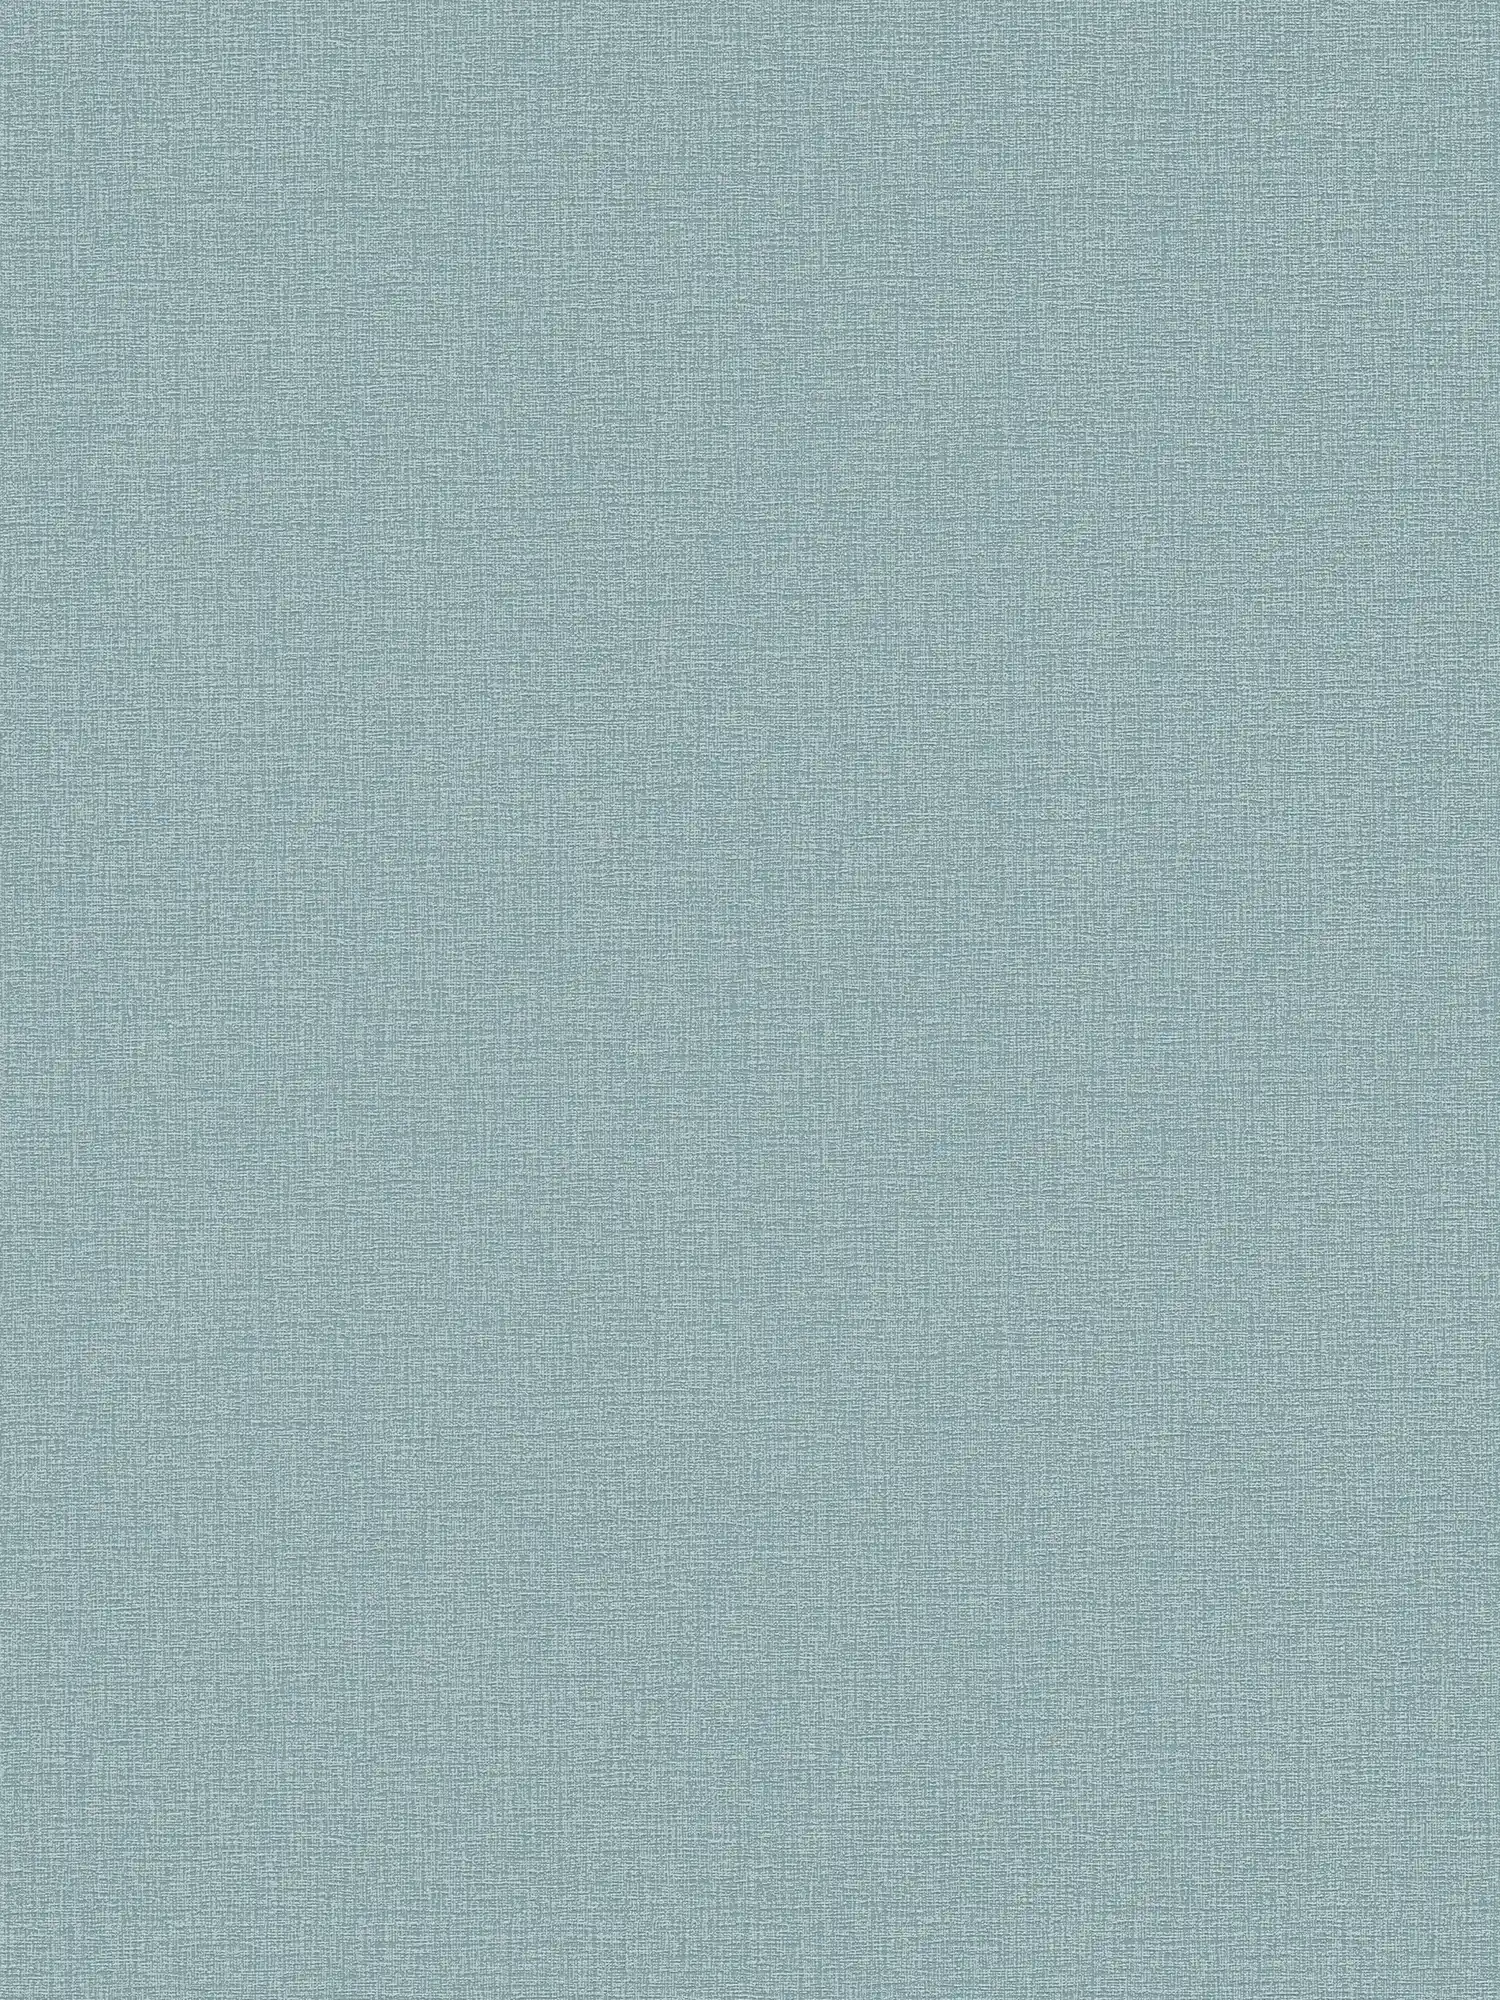 papier peint en papier uni légèrement structuré - bleu, turquoise, pétrole
